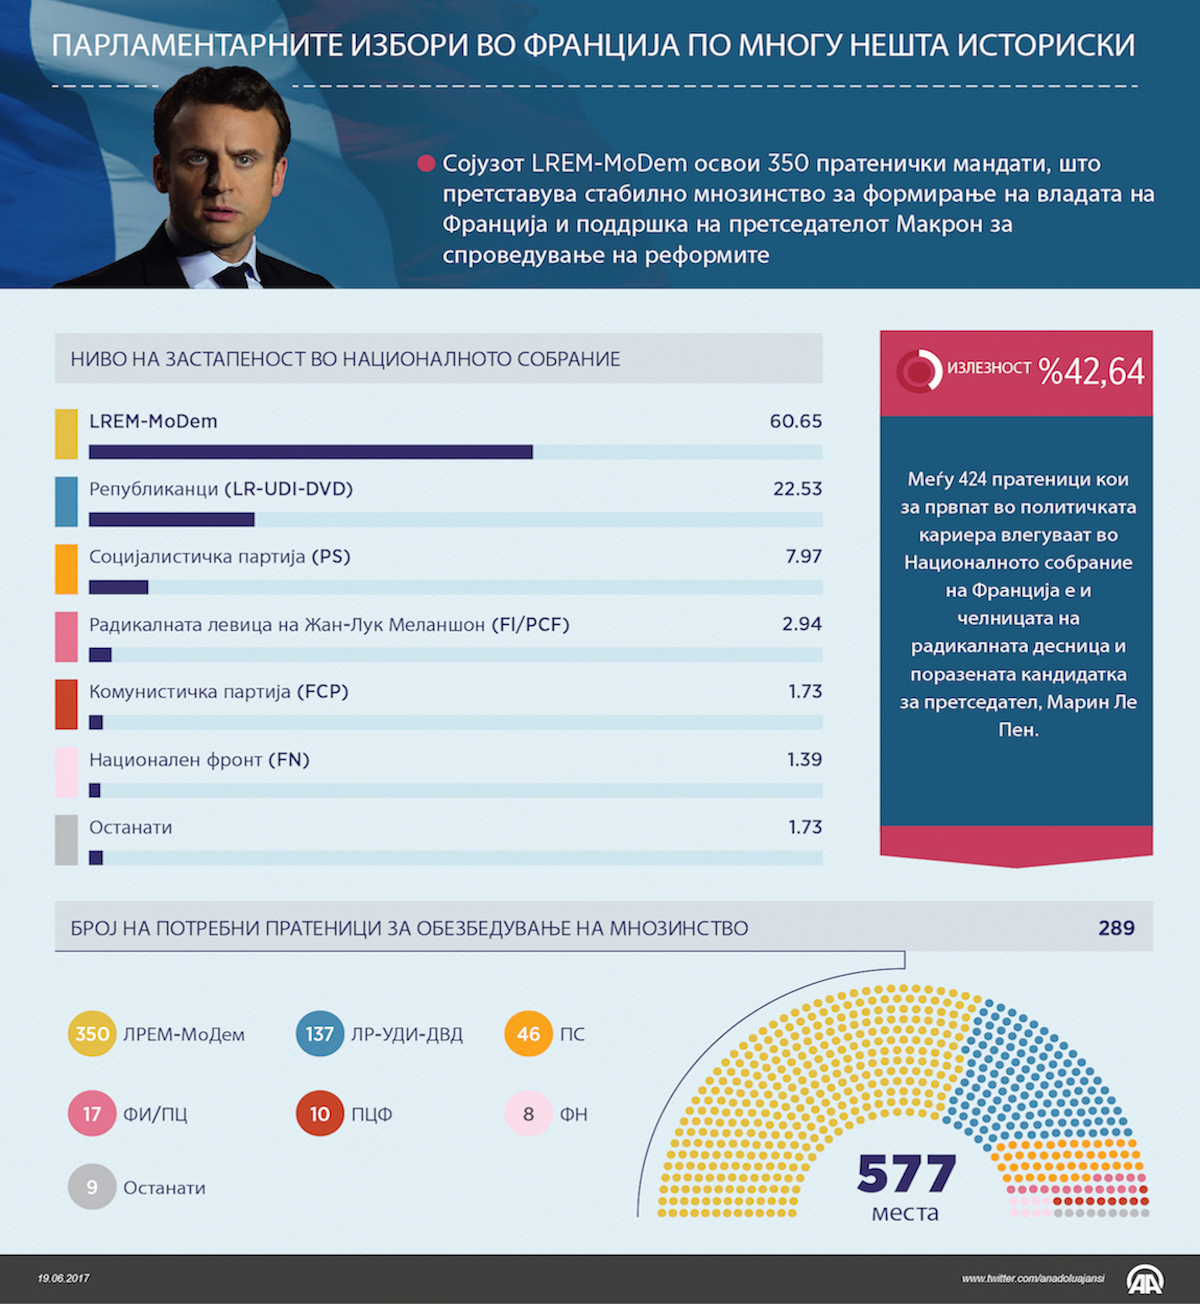 Парламентарните избори во Франција според многу нешта историски